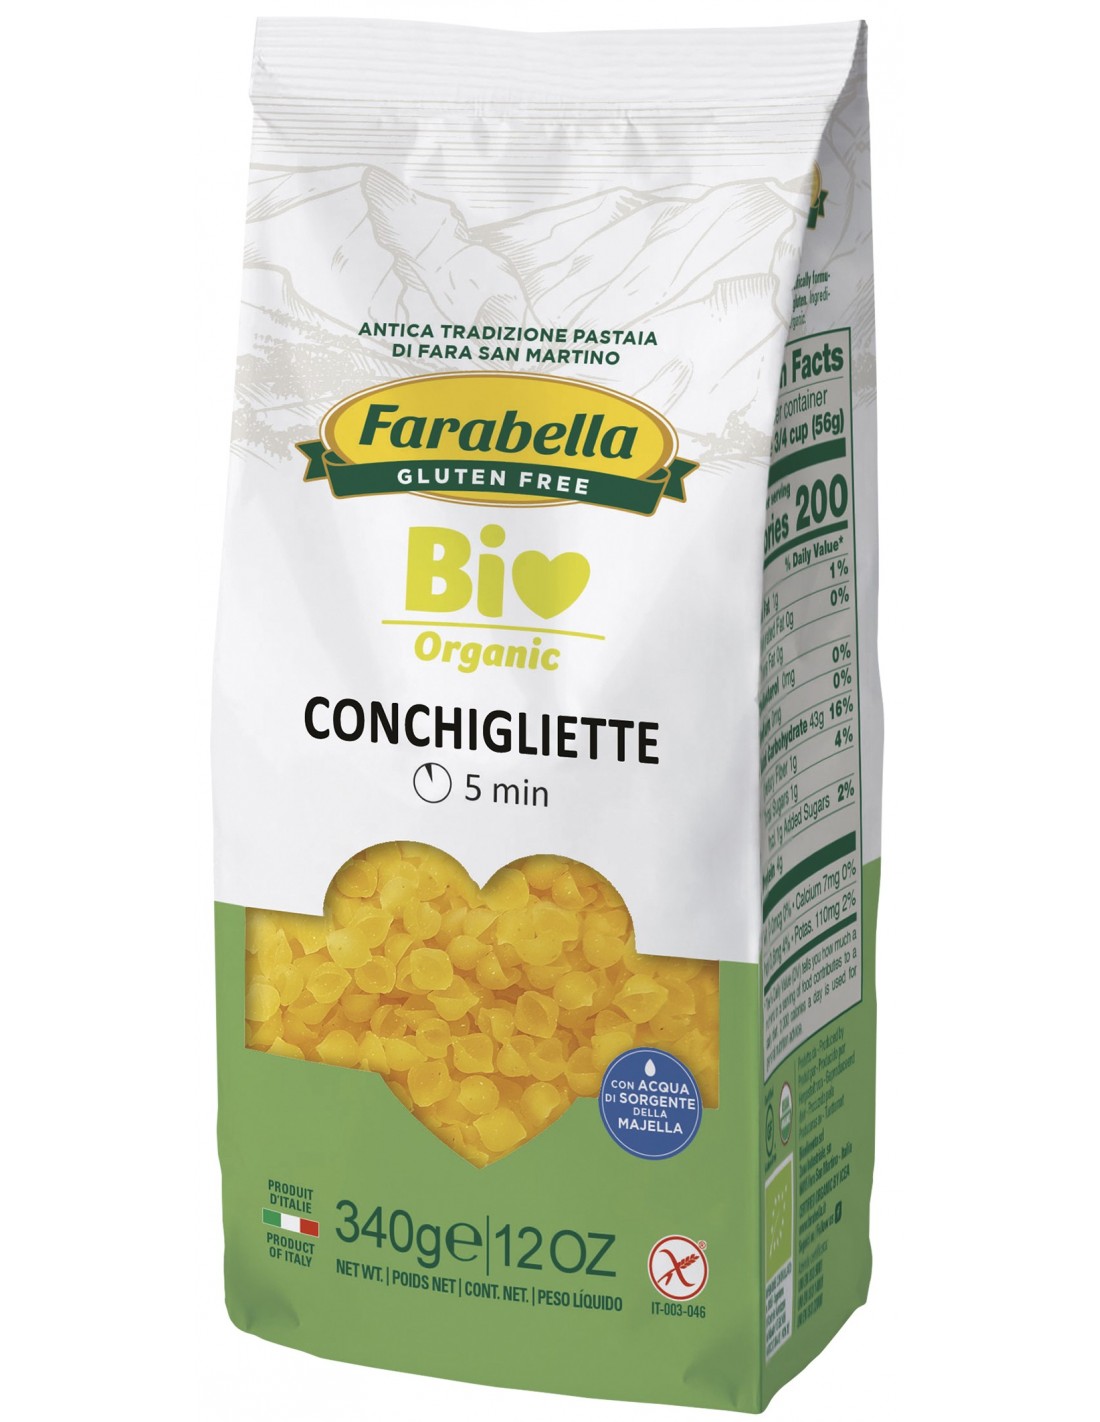 Farabella Conchigliette Bio